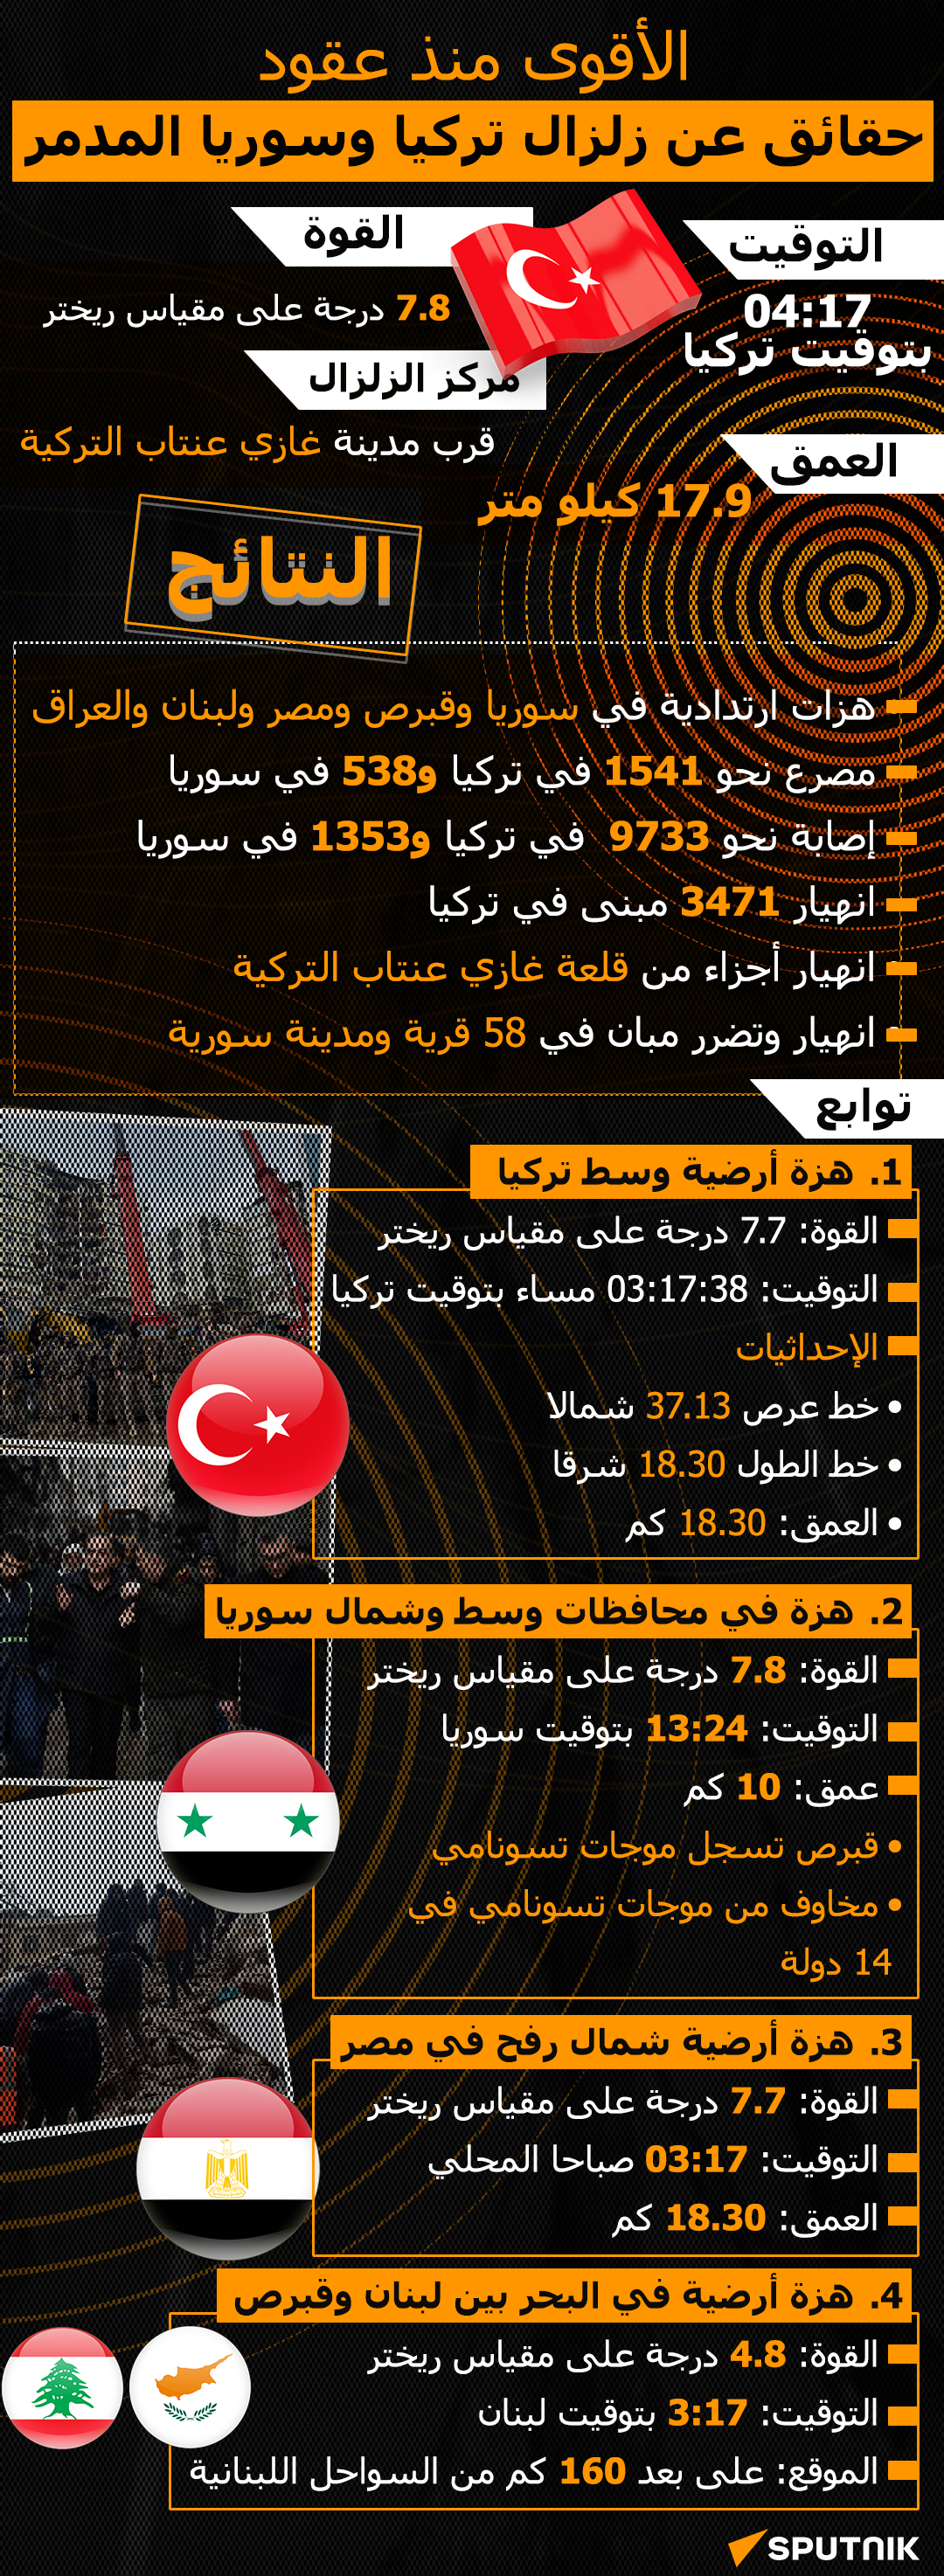 الأقوى منذ عقود... حقائق عن زلزال تركيا وسوريا المدمر - سبوتنيك عربي